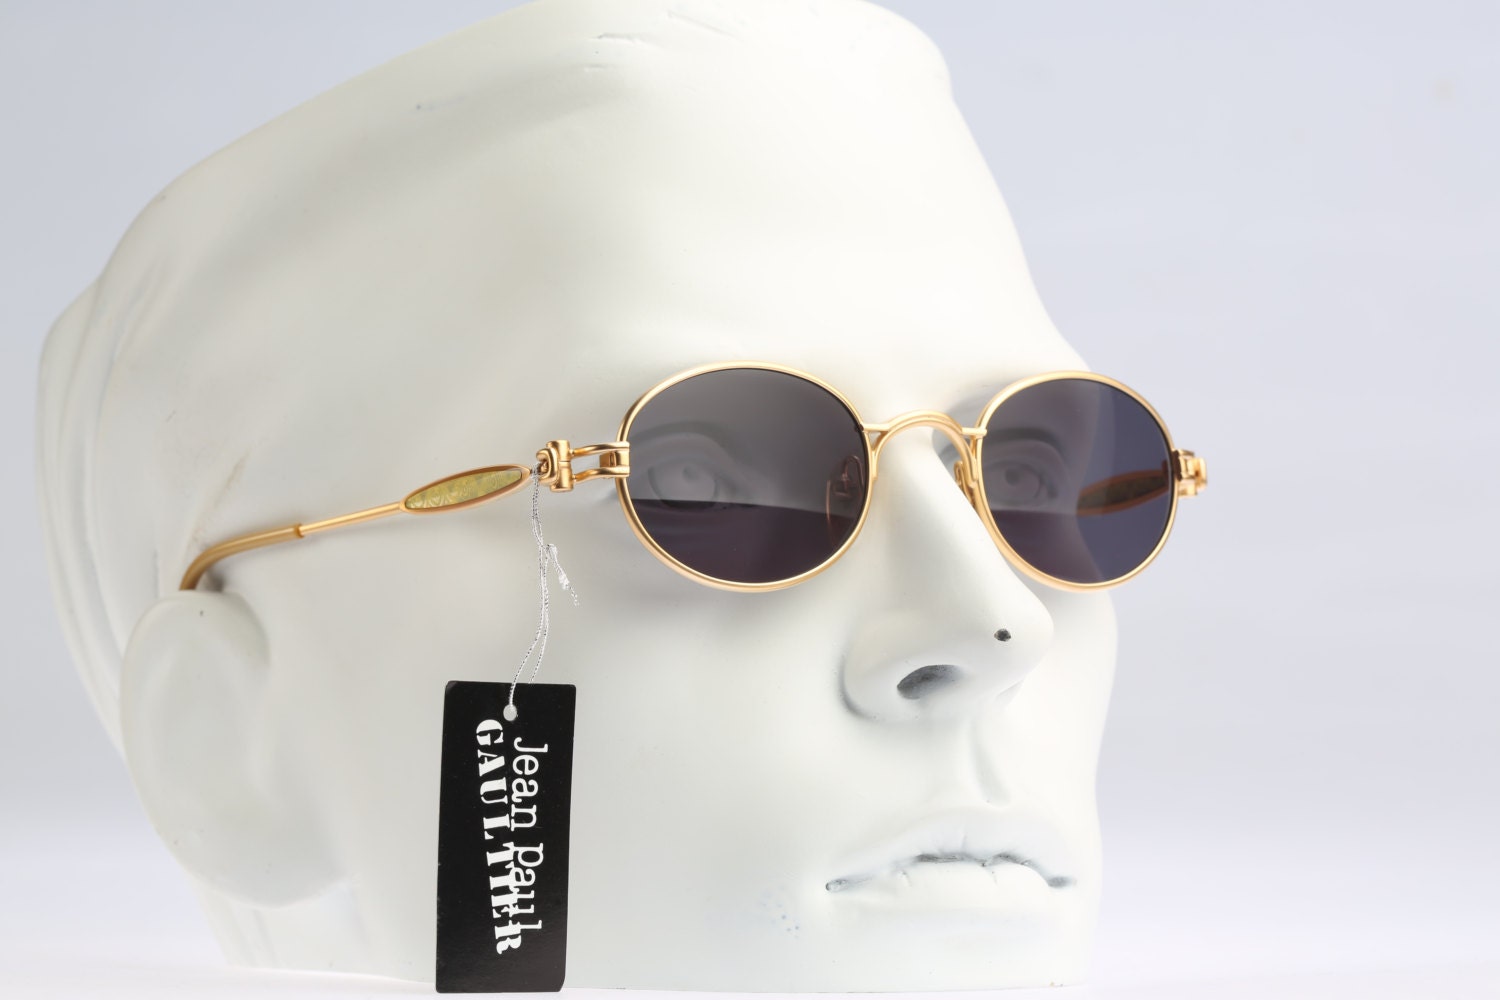 Jean Paul Gaultier 56-7113 / 90s Vintage sunglasses / NOS / Remarkable ...